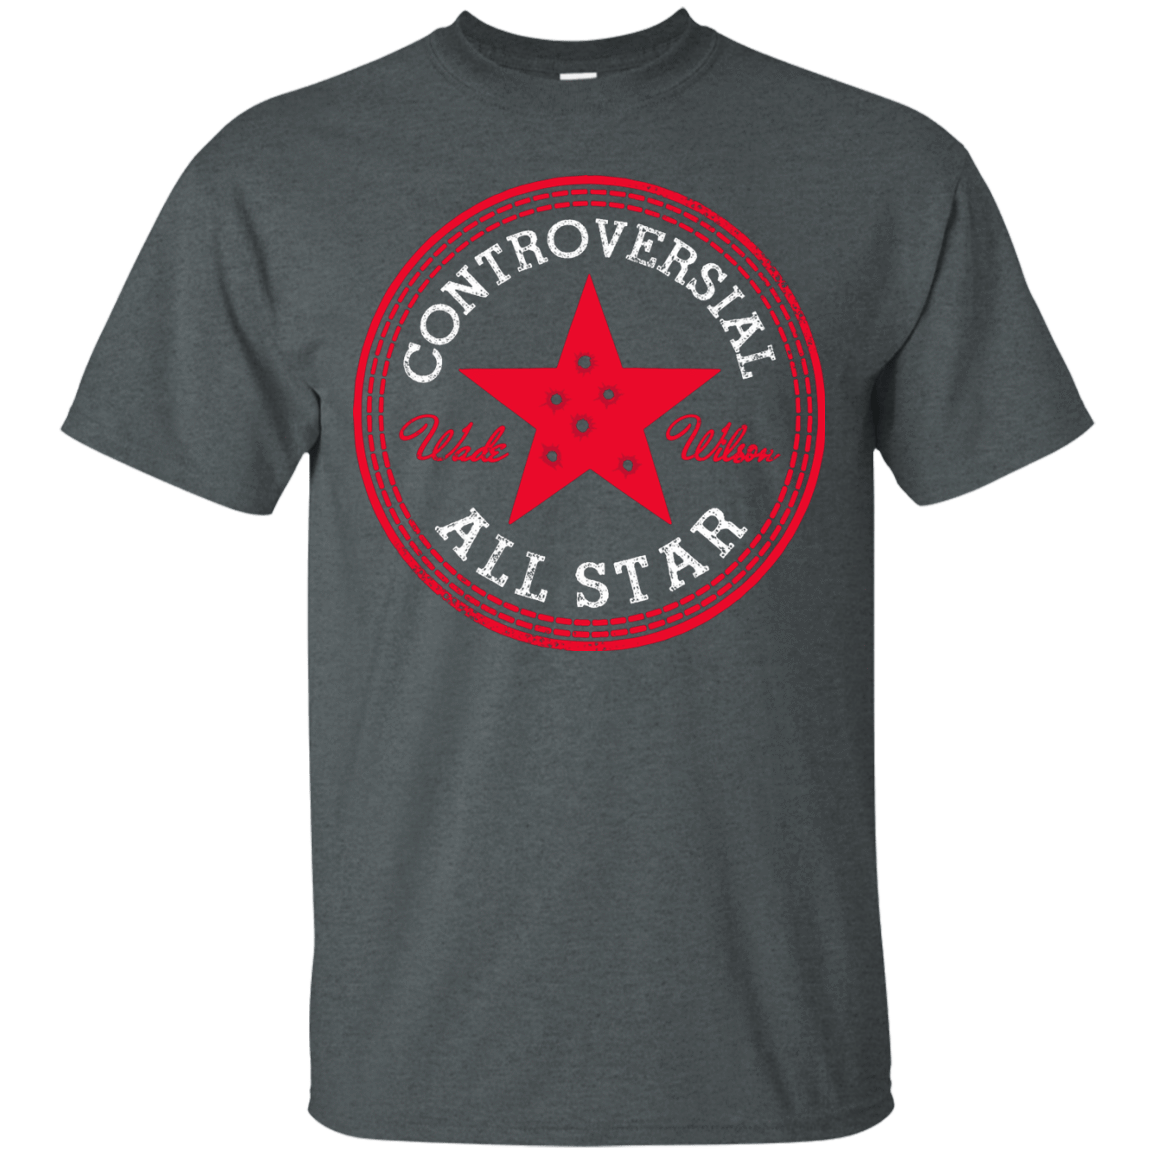 T-Shirts Dark Heather / Small All Star T-Shirt